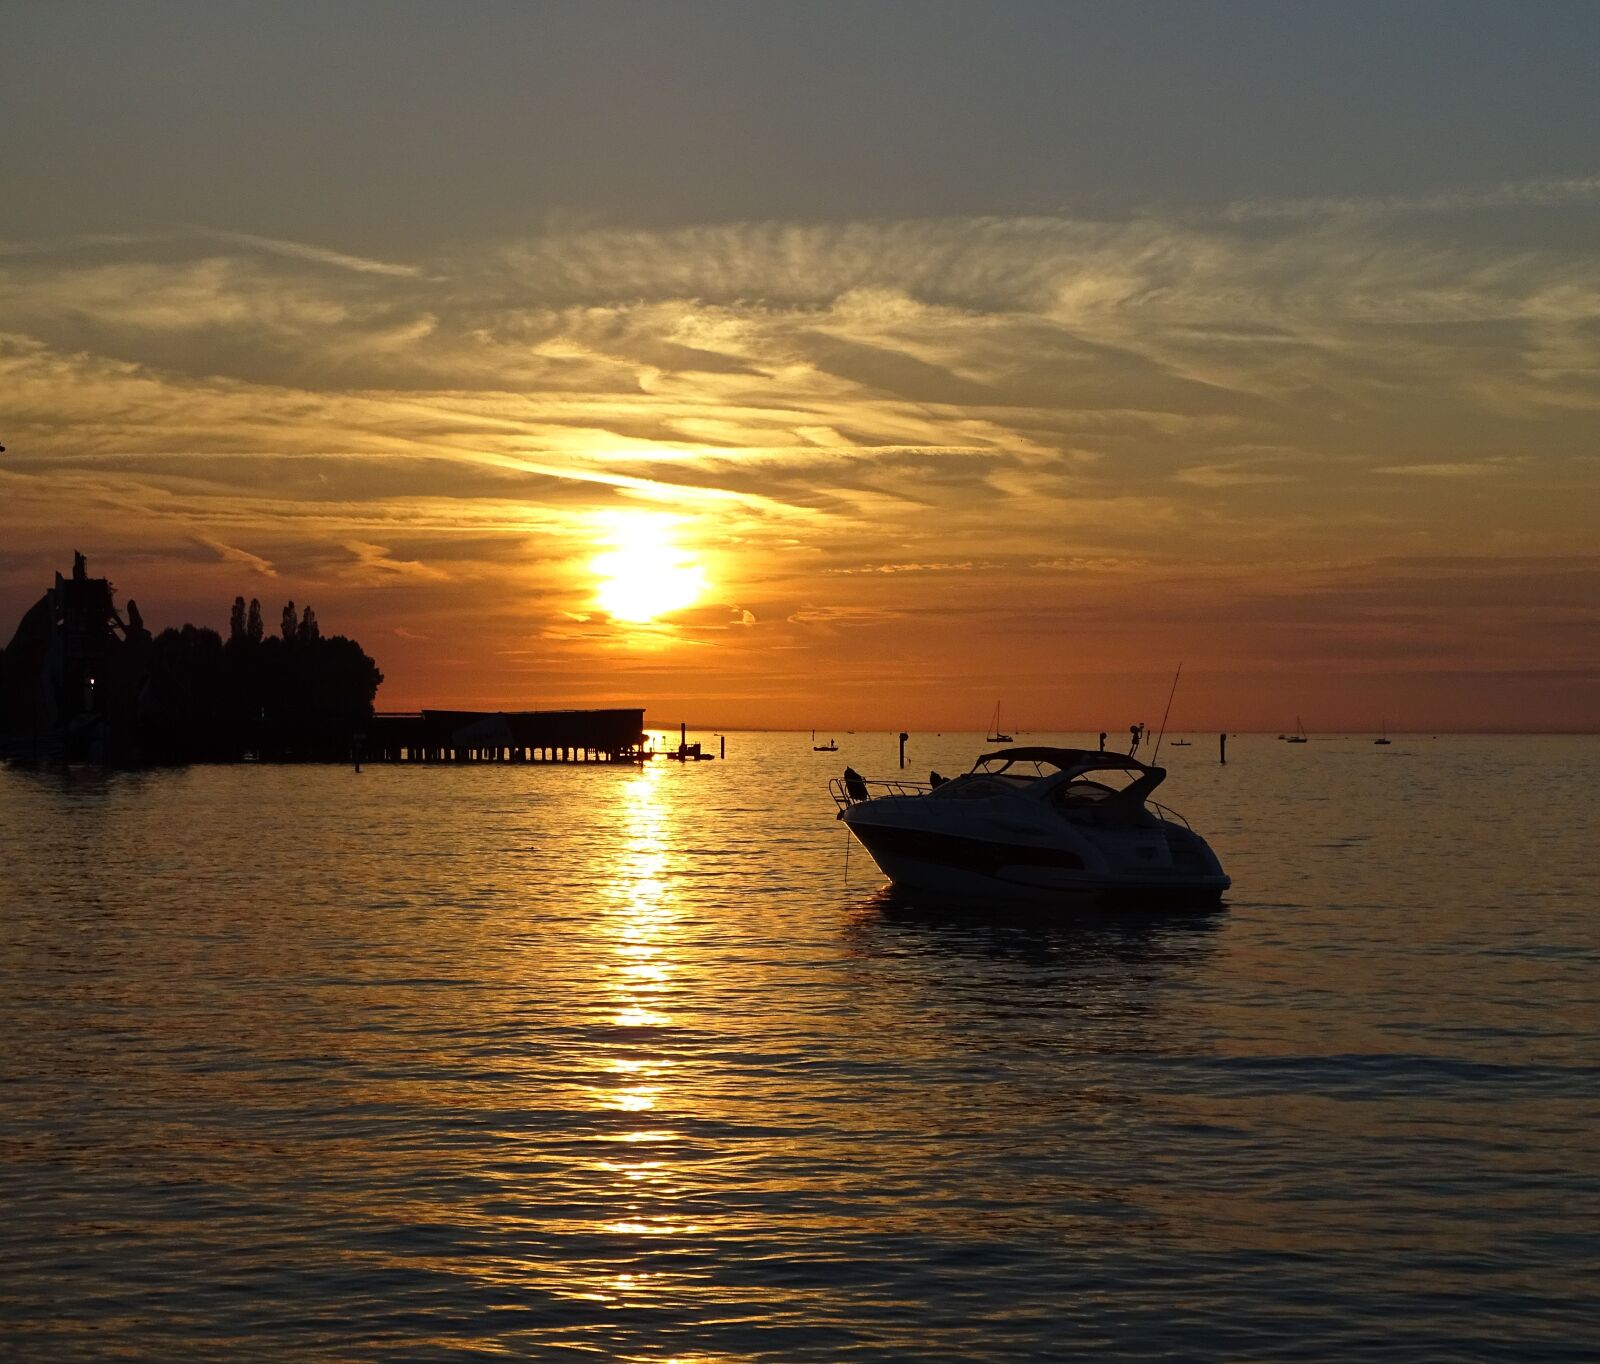 Sony Cyber-shot DSC-HX400V sample photo. Lake sunset, boat on photography